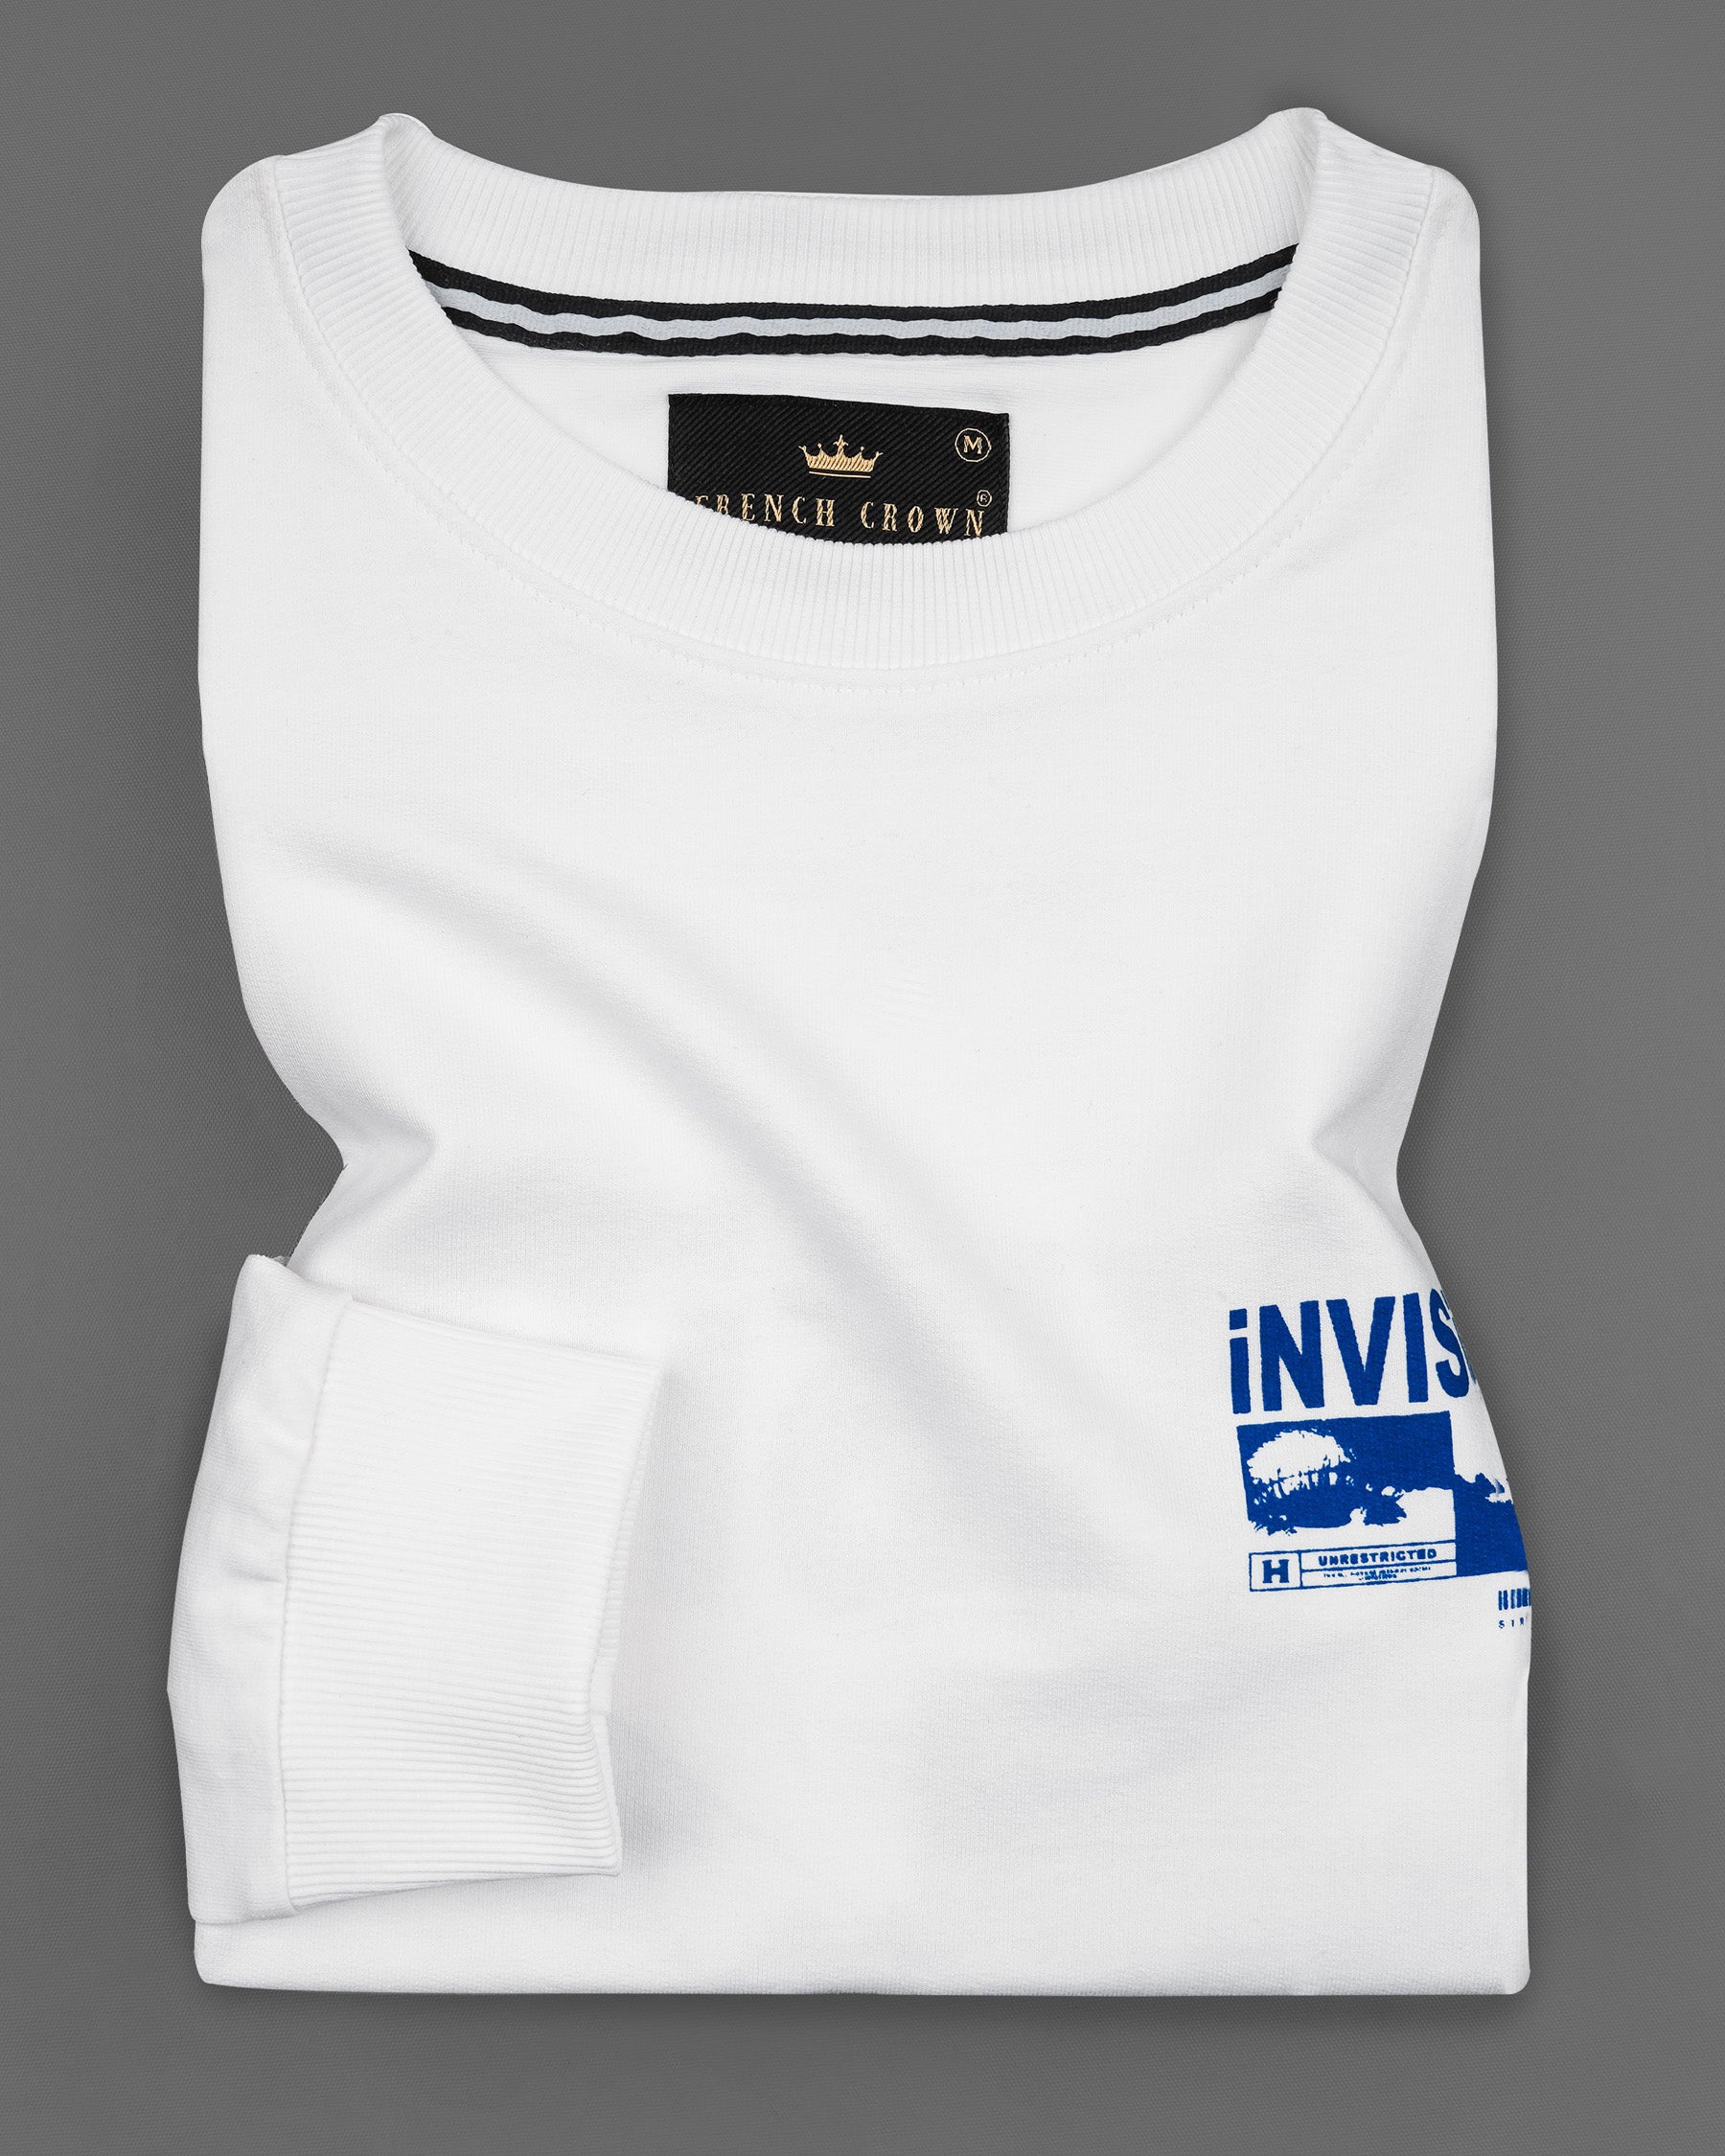 Bright White Premium Cotton Sweatshirt TS600-S, TS600-M, TS600-L, TS600-XL, TS600-XXL, TS600-3XL, TS600-4XL